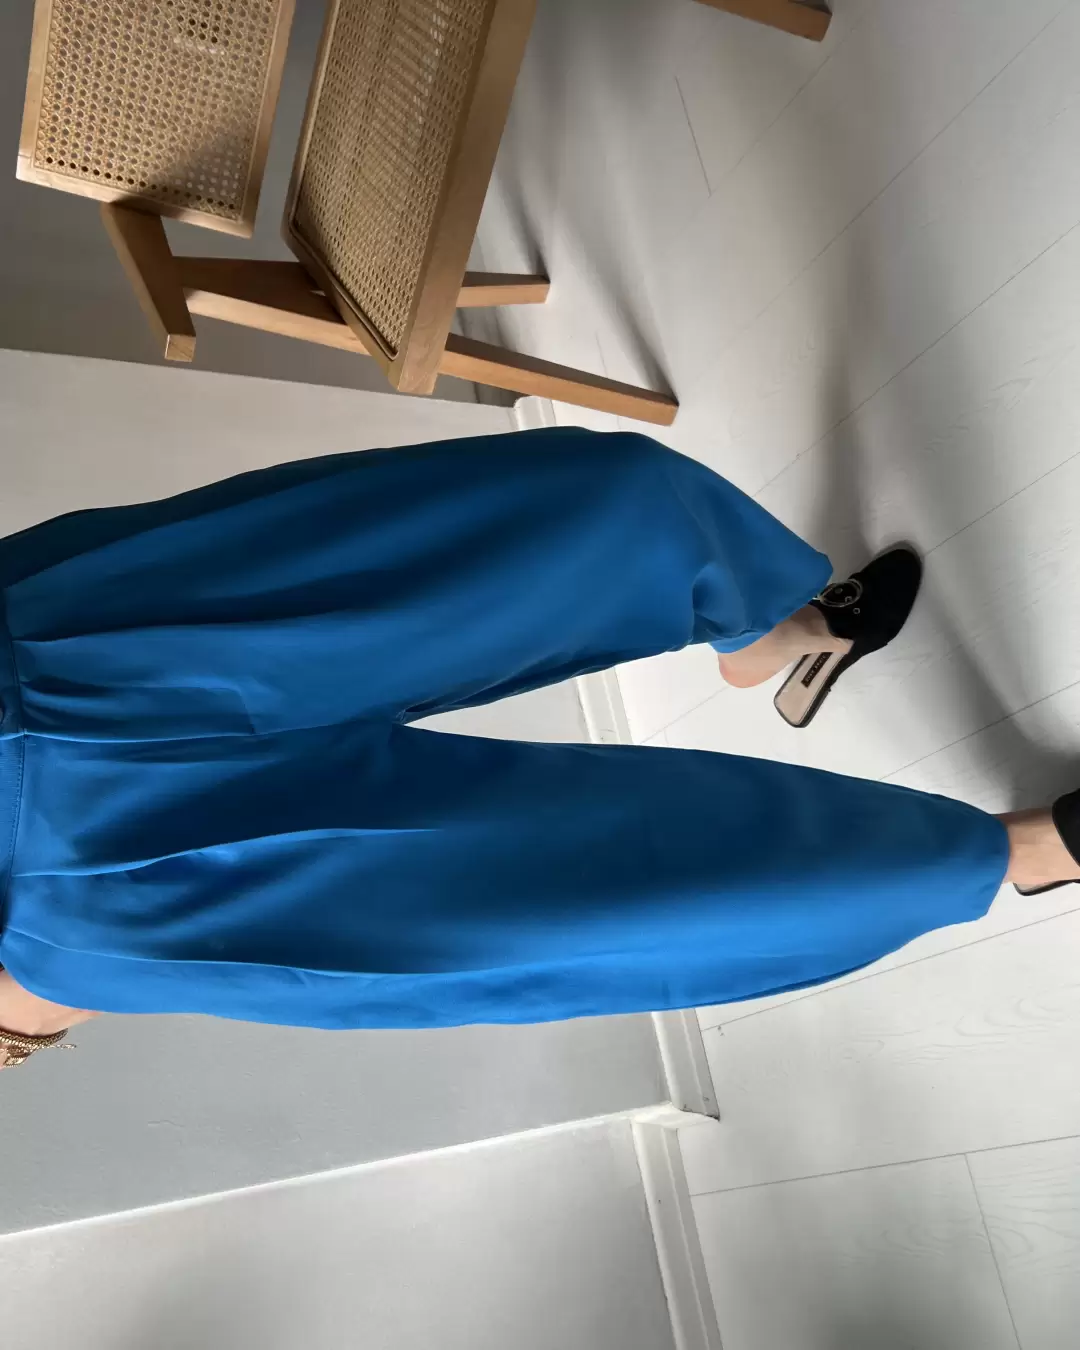 Mavi Şalvar Model Krep Pantolon